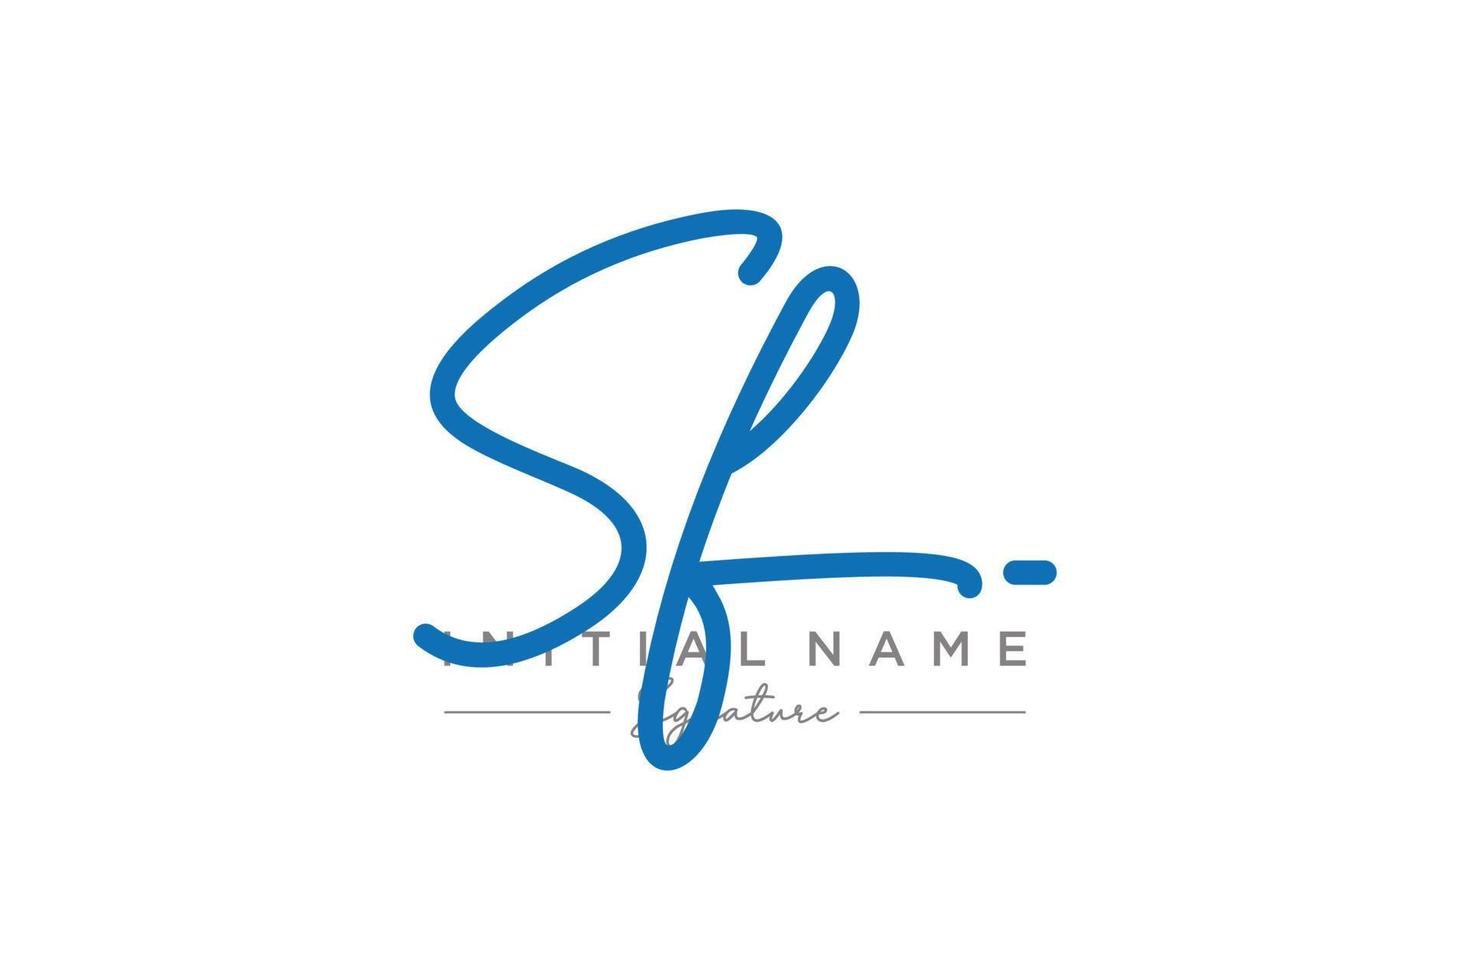 iniziale sf firma logo modello vettore. mano disegnato calligrafia lettering vettore illustrazione.